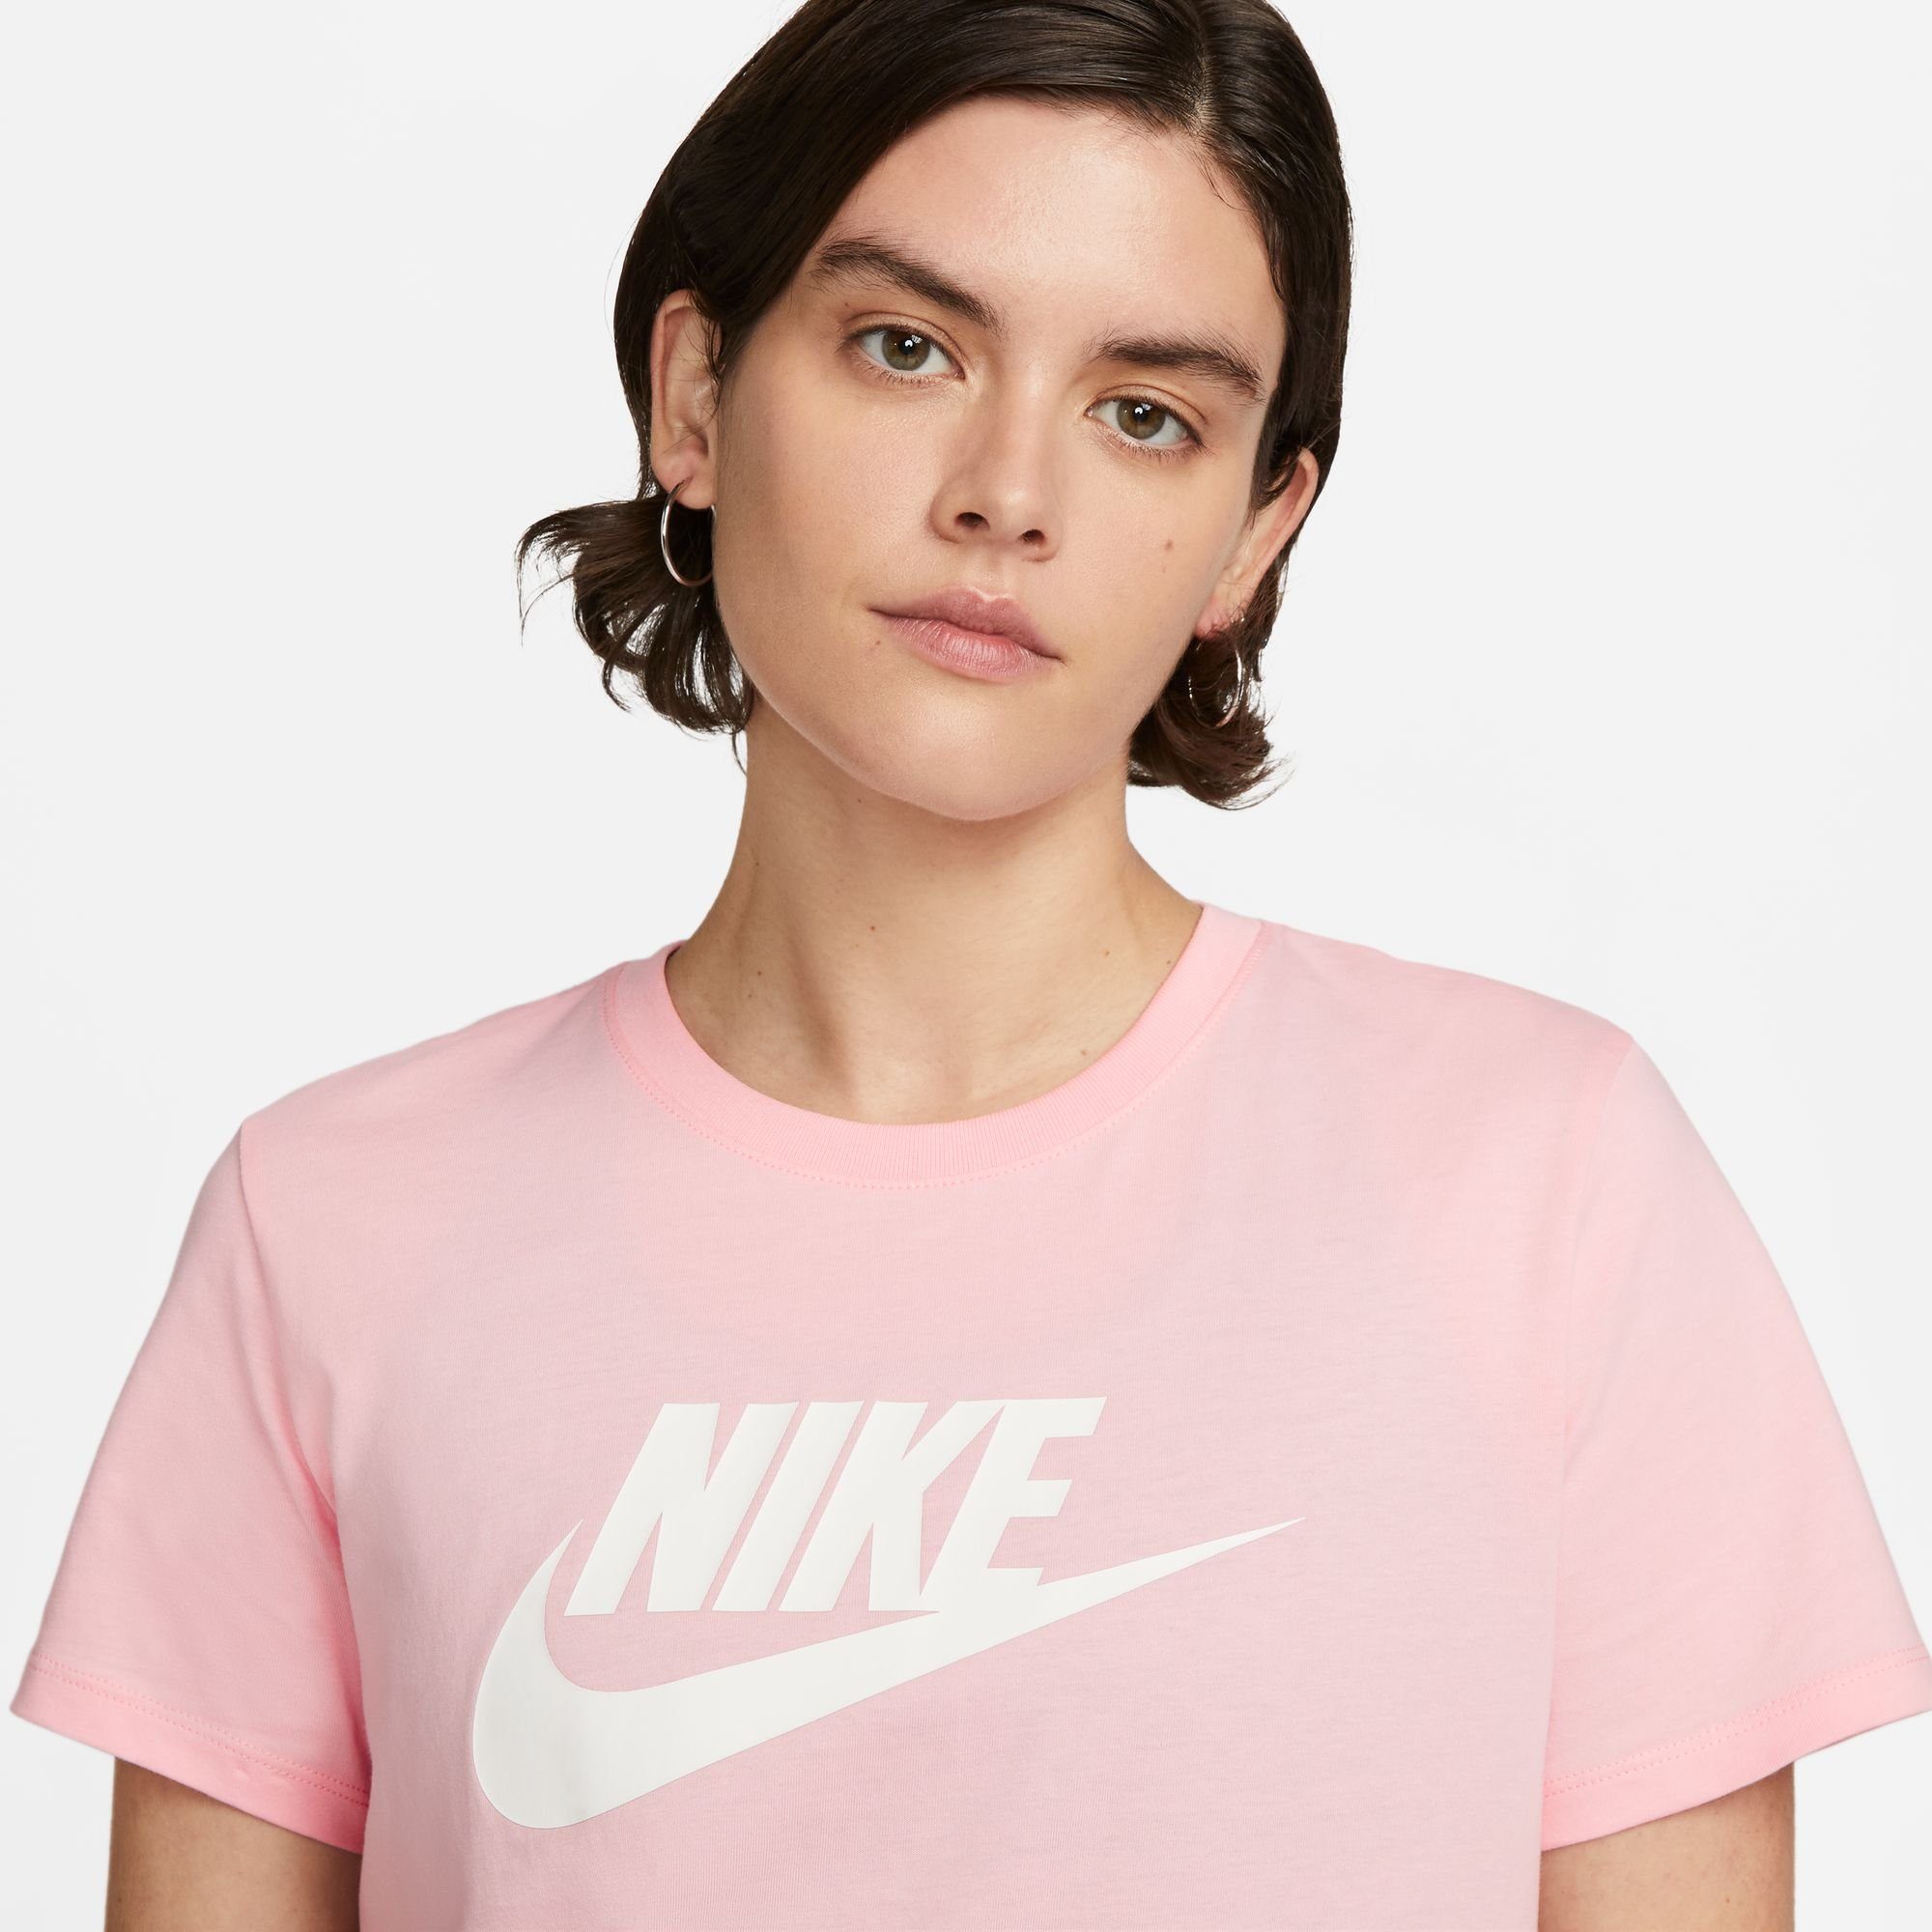 SOFT LOGO T-Shirt PINK Sportswear MED ESSENTIALS Nike WOMEN'S T-SHIRT